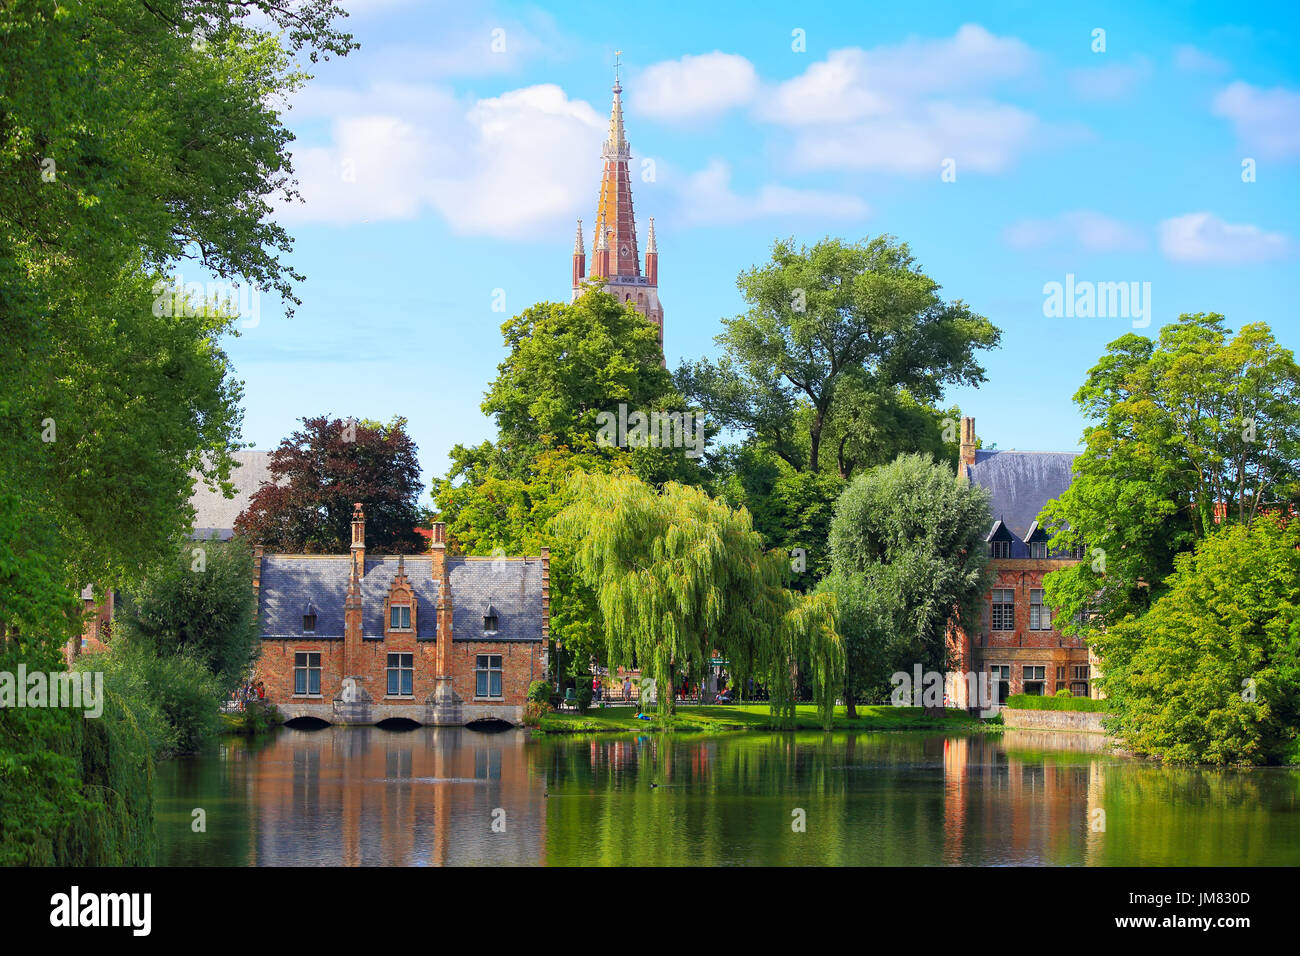 Stadtbild von Brügge an einem Sommertag. Altbauten und grüne Bäume auf einen Wasserkanal in Brügge. Stockfoto